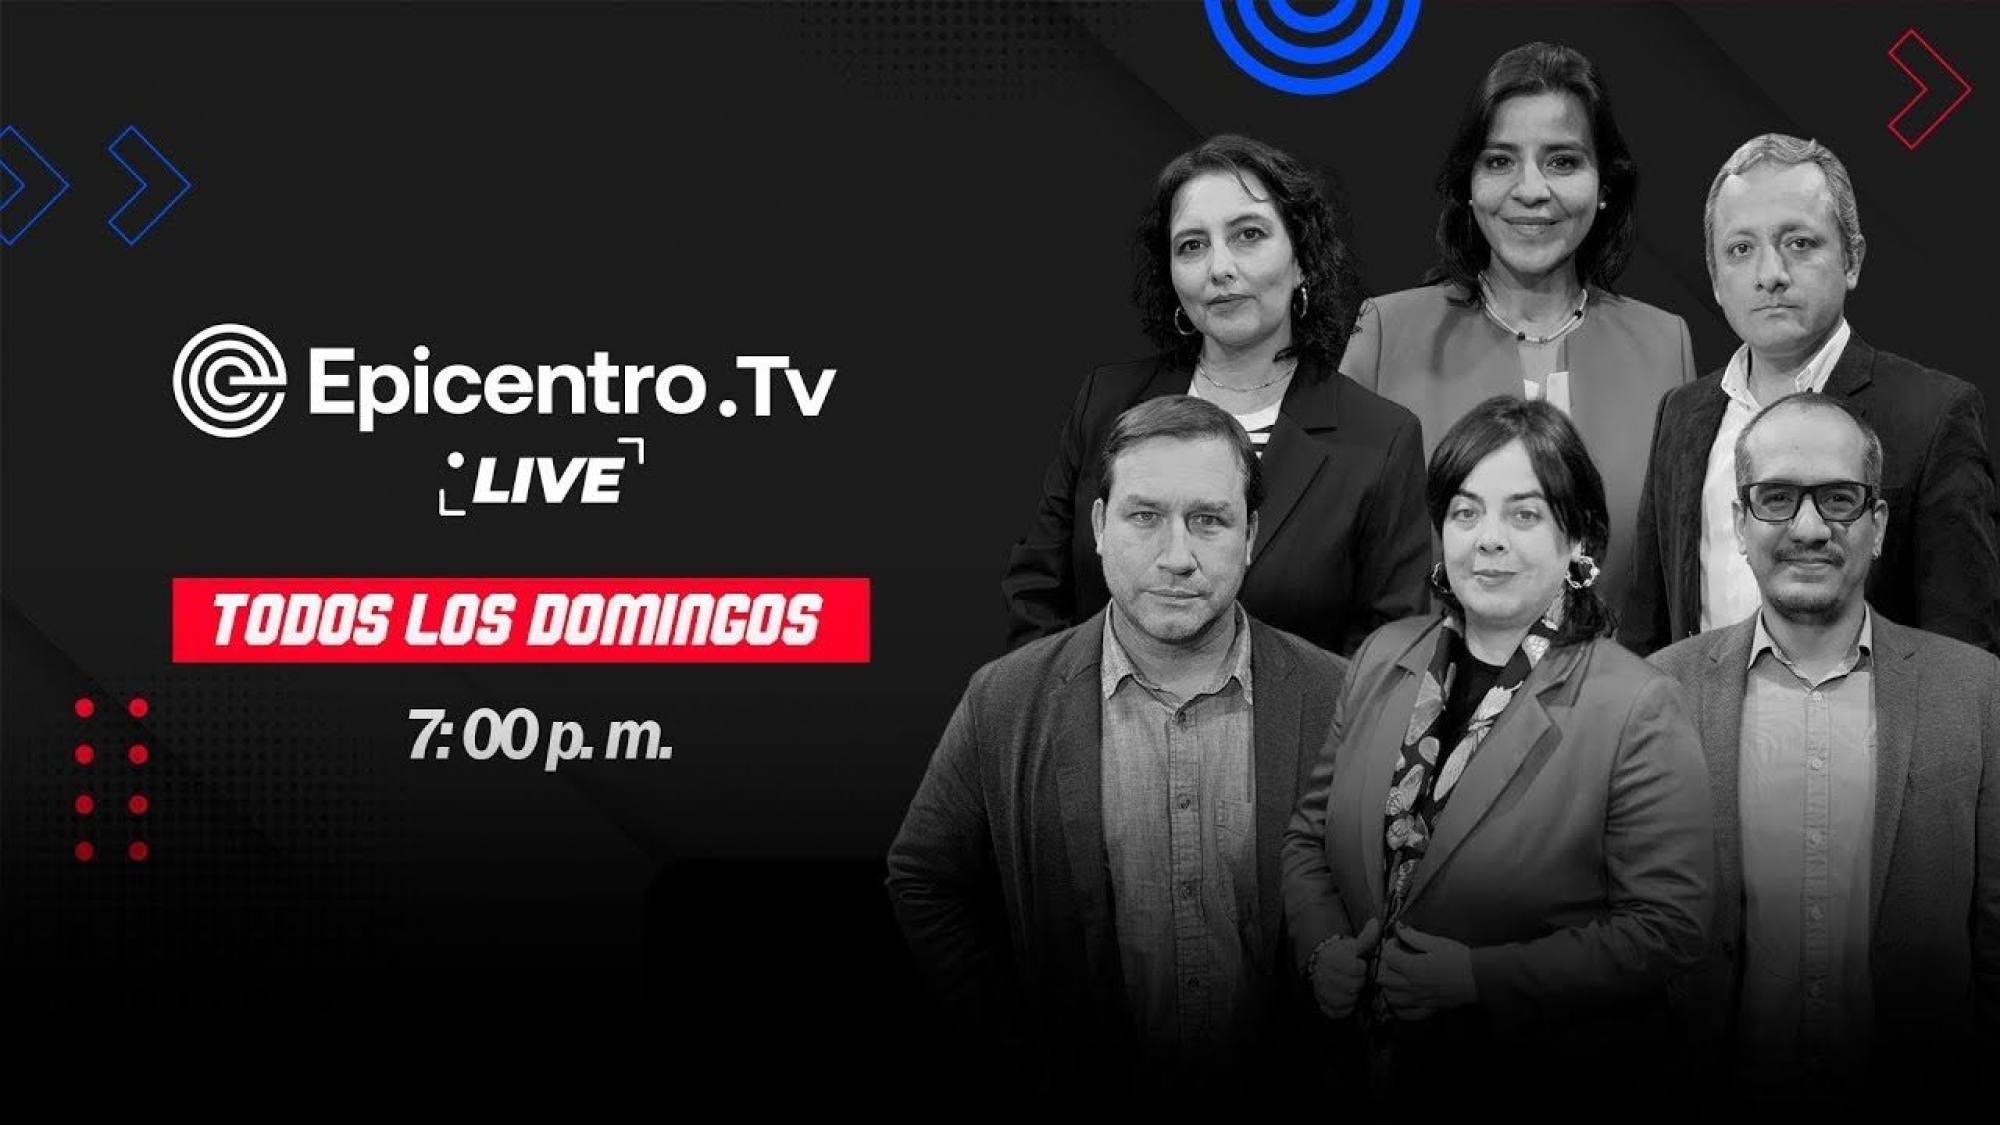 Epicentro Tv Live | Adelanto de elecciones más lejos que nunca, Epicentro TV